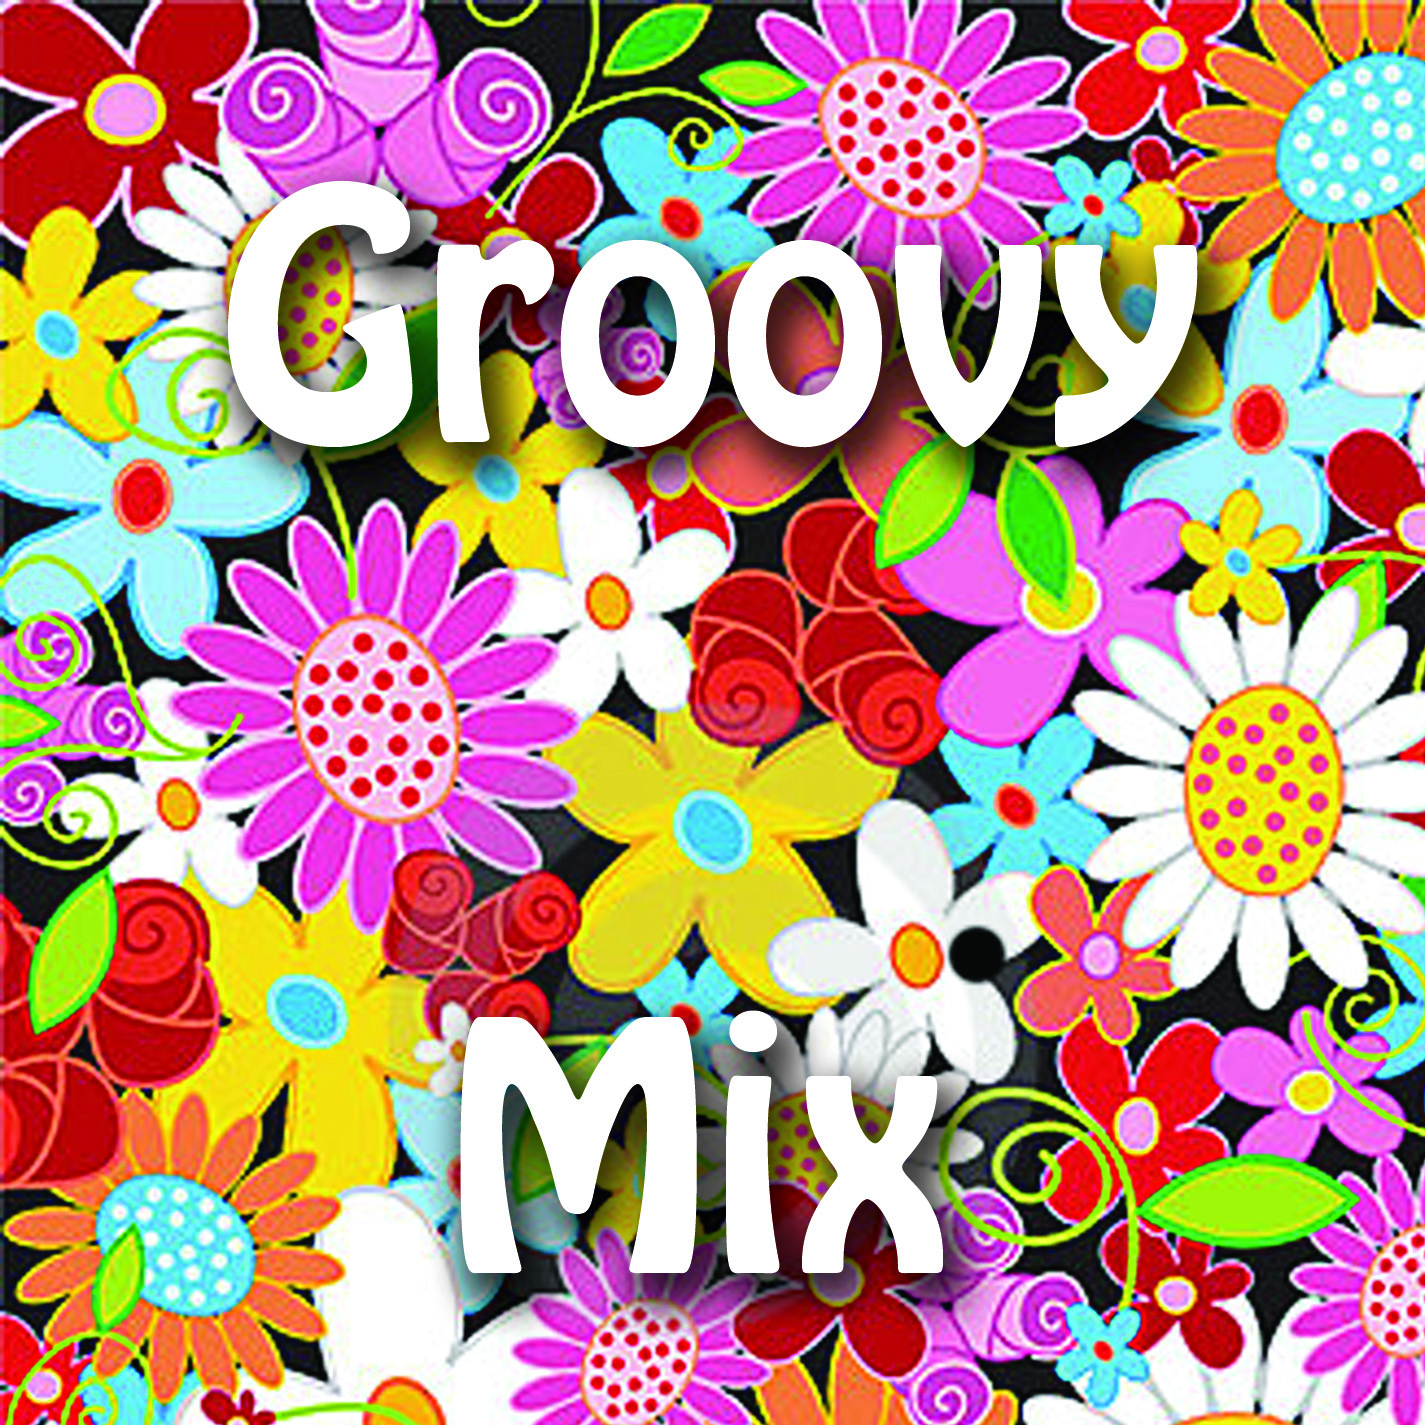 Groovy CD - 2 flowers copy.jpg